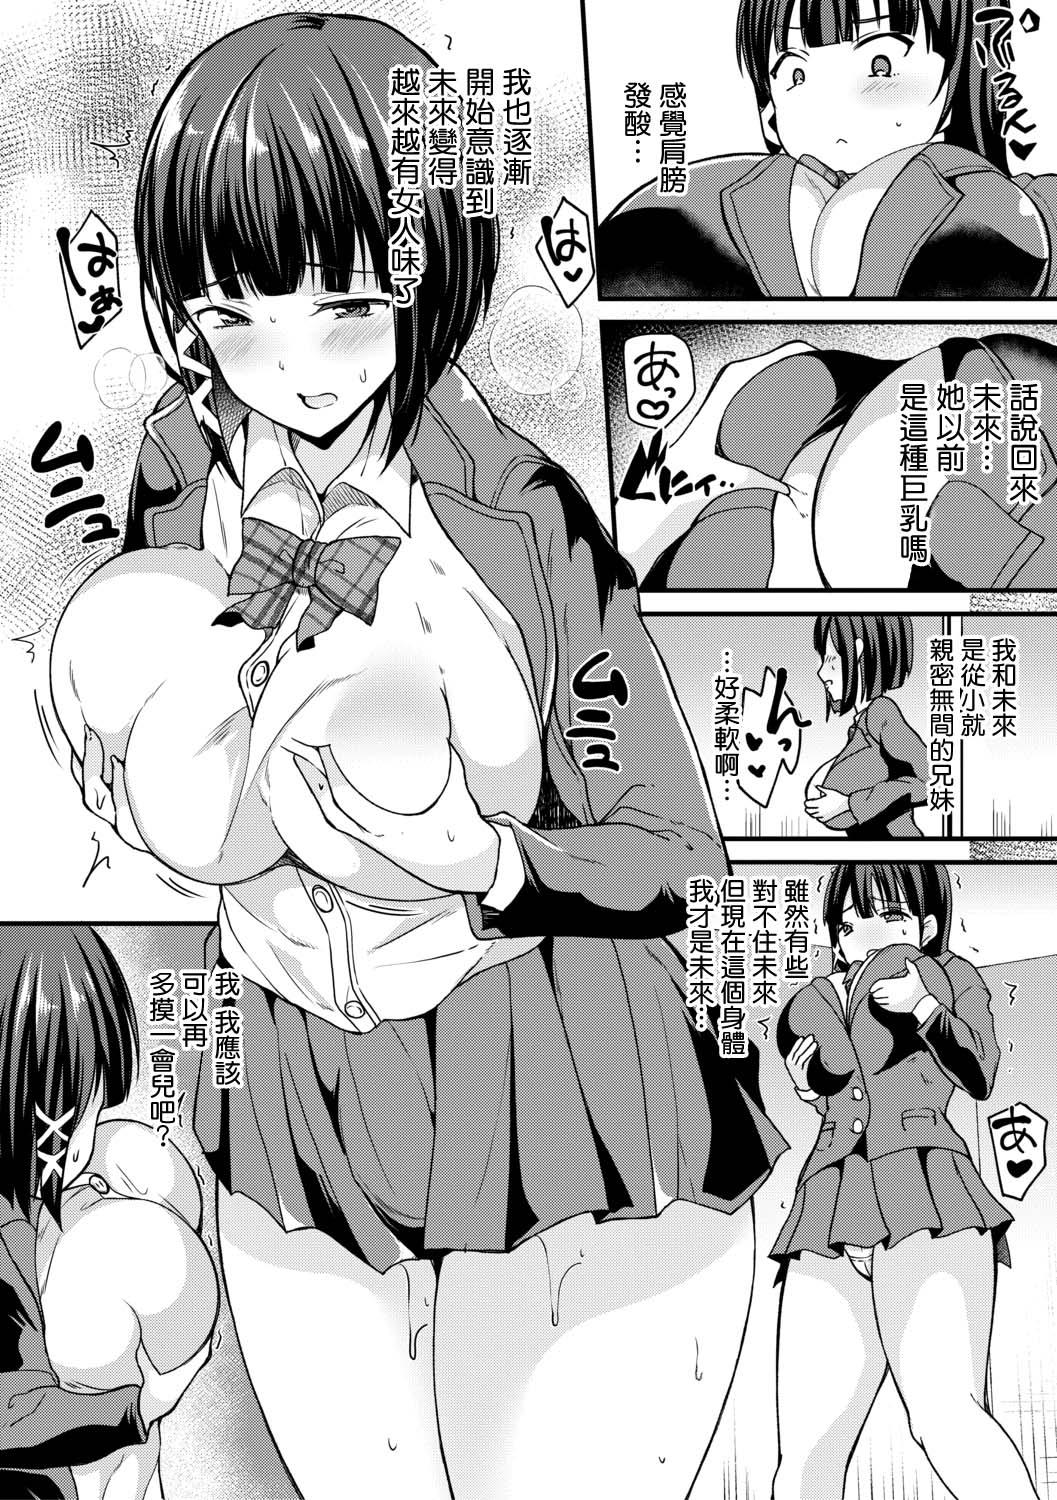 4some Kaikan!? Imouto change! Interracial Porn - Page 2